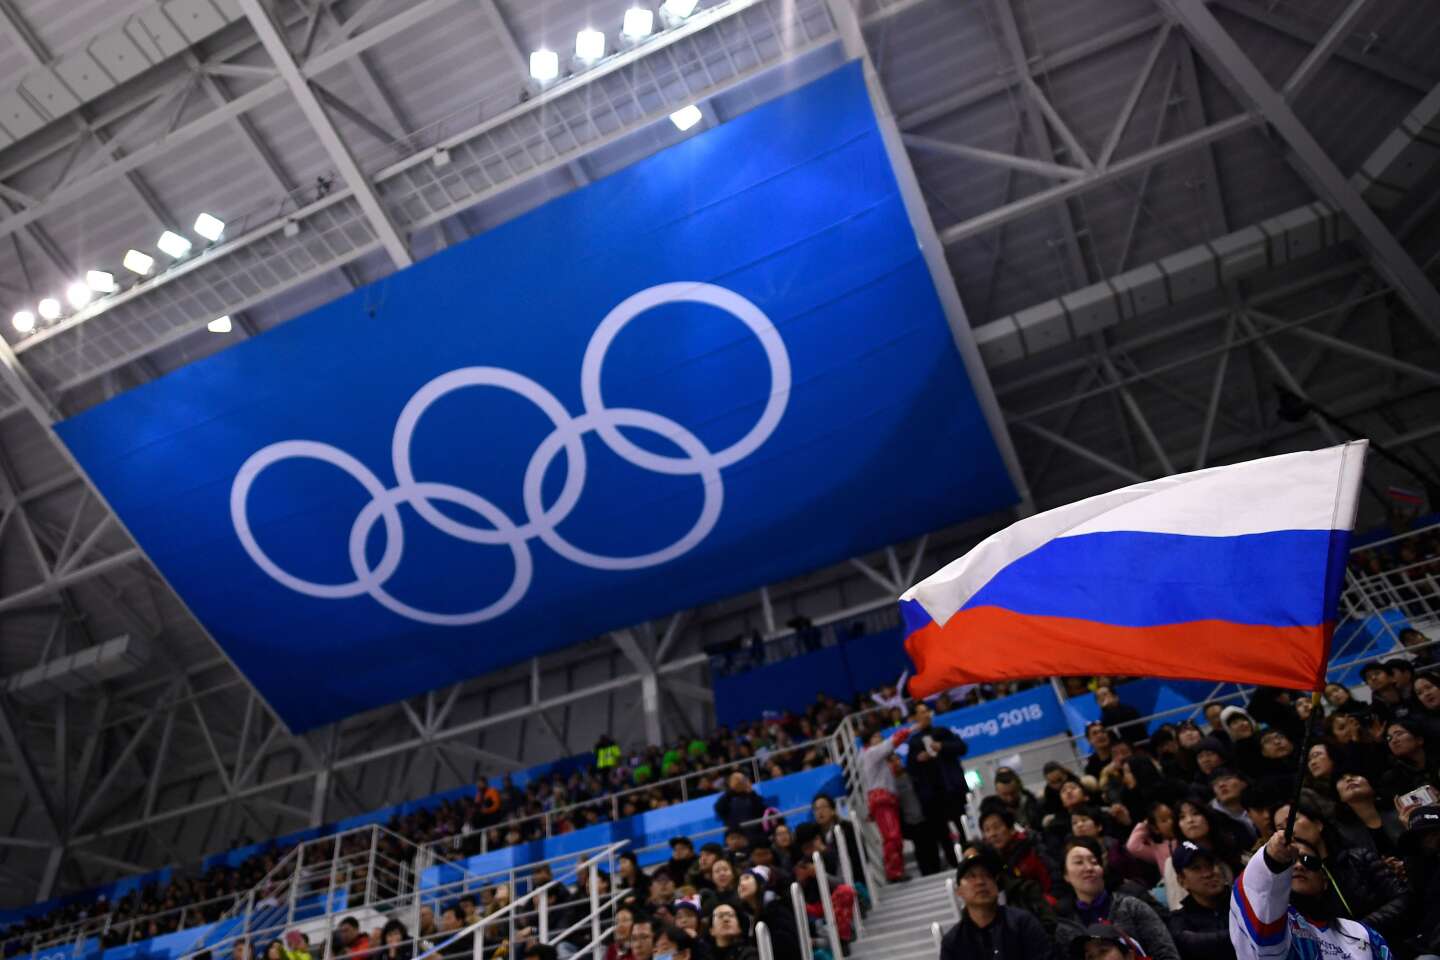 Отстранение российских и белорусских спортсменов от участия в церемонии открытия